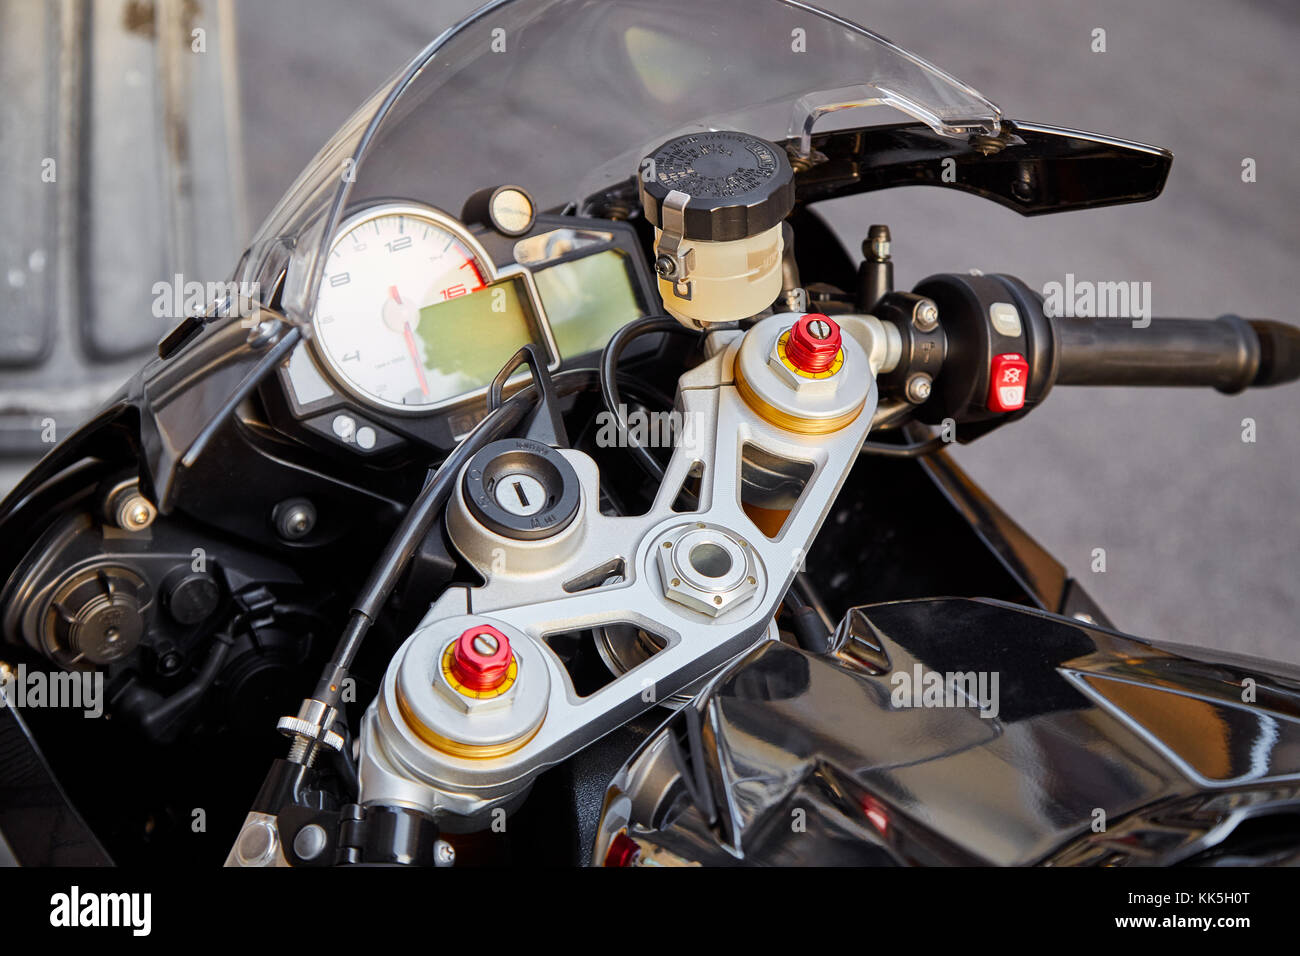 Volant et tableau de bord d'une moto de sport moderne Photo Stock - Alamy